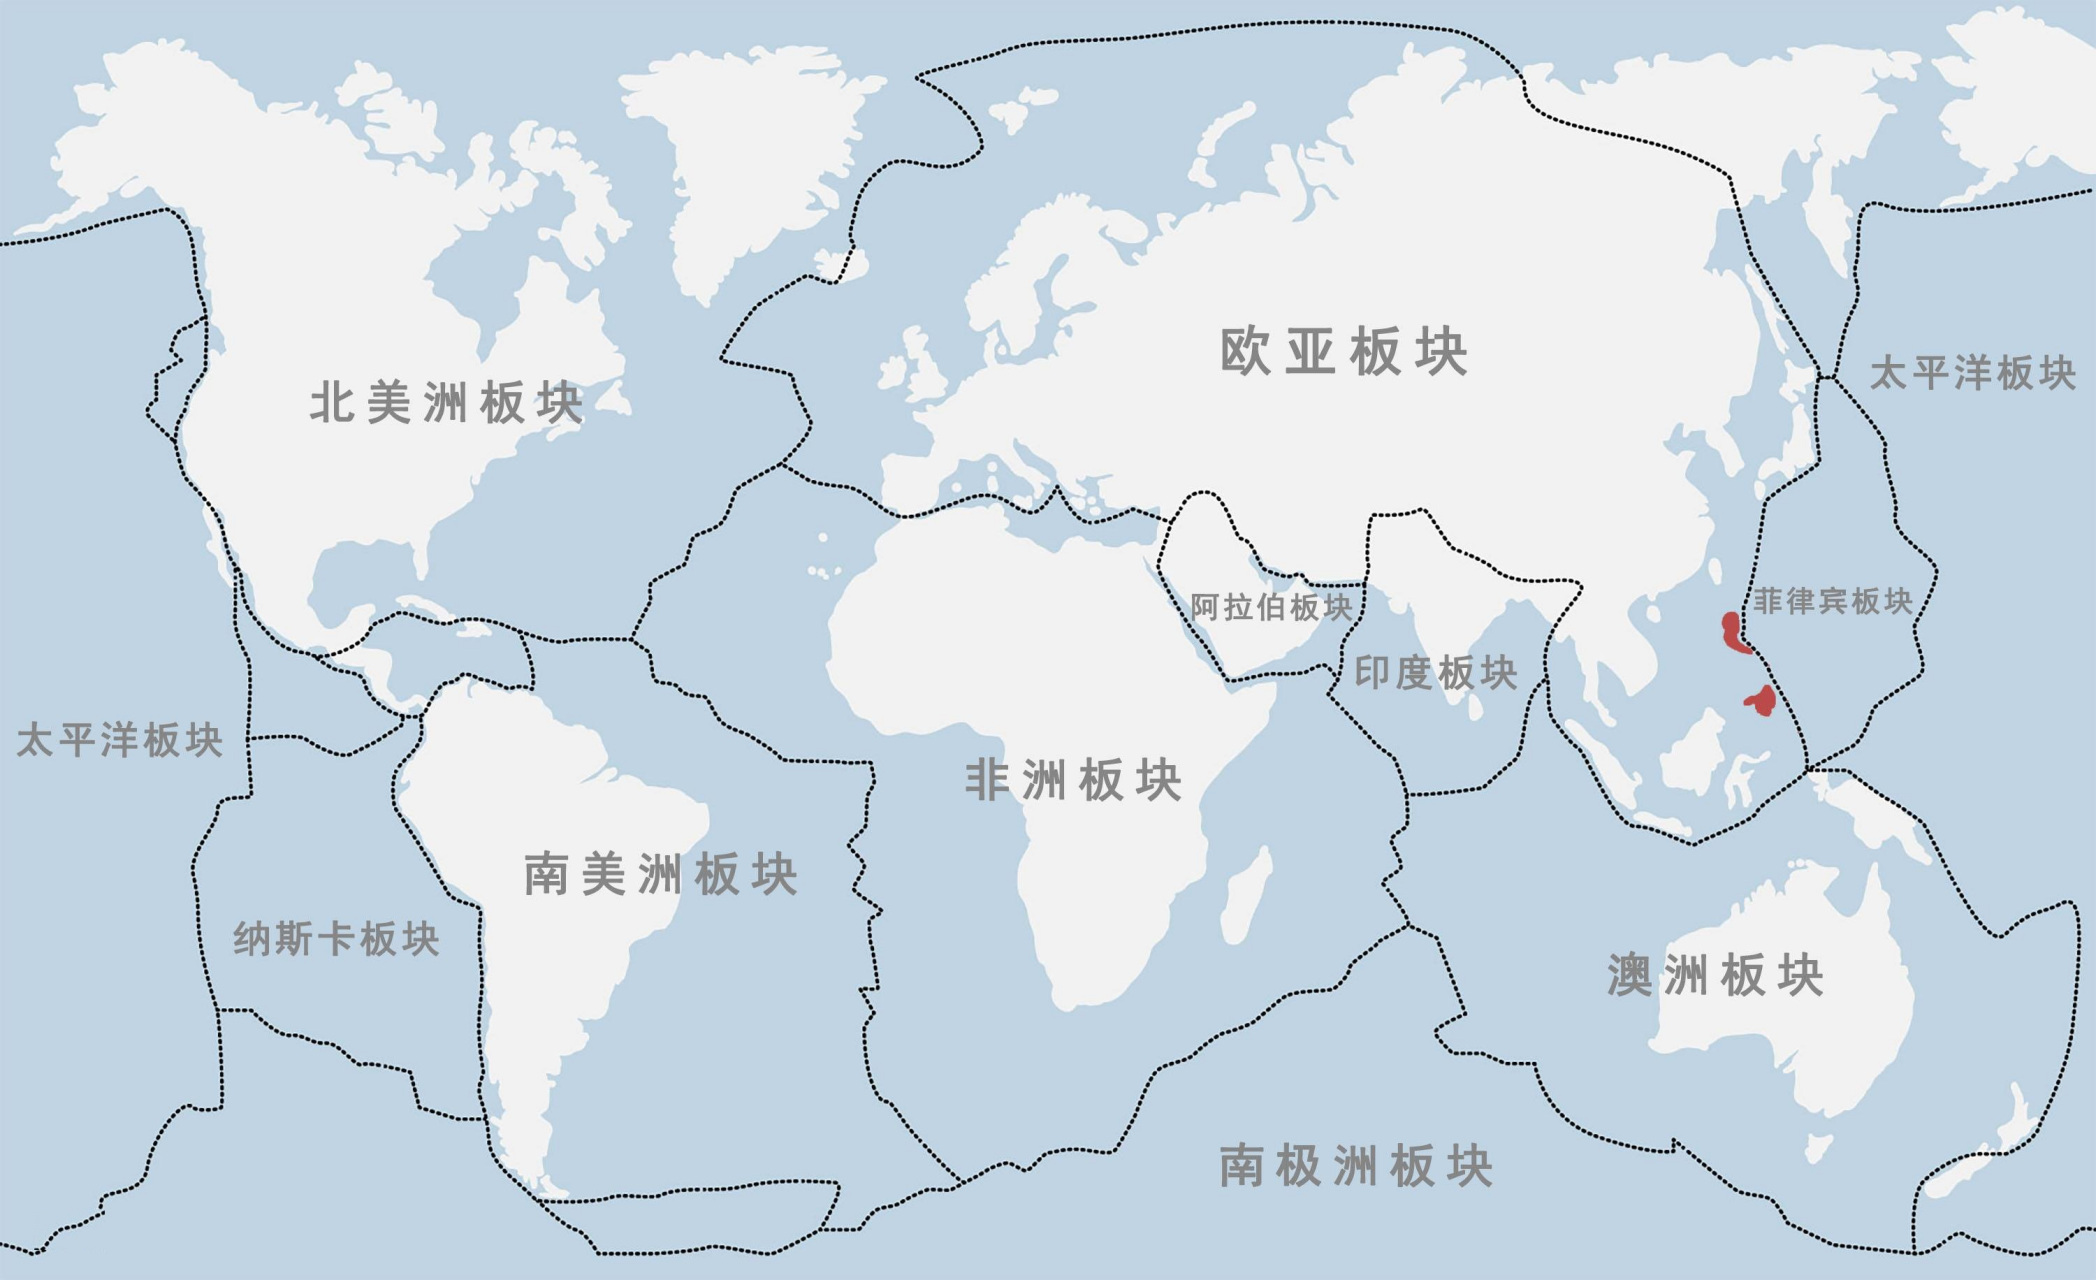 世界板块分布图(以大西洋为中心)